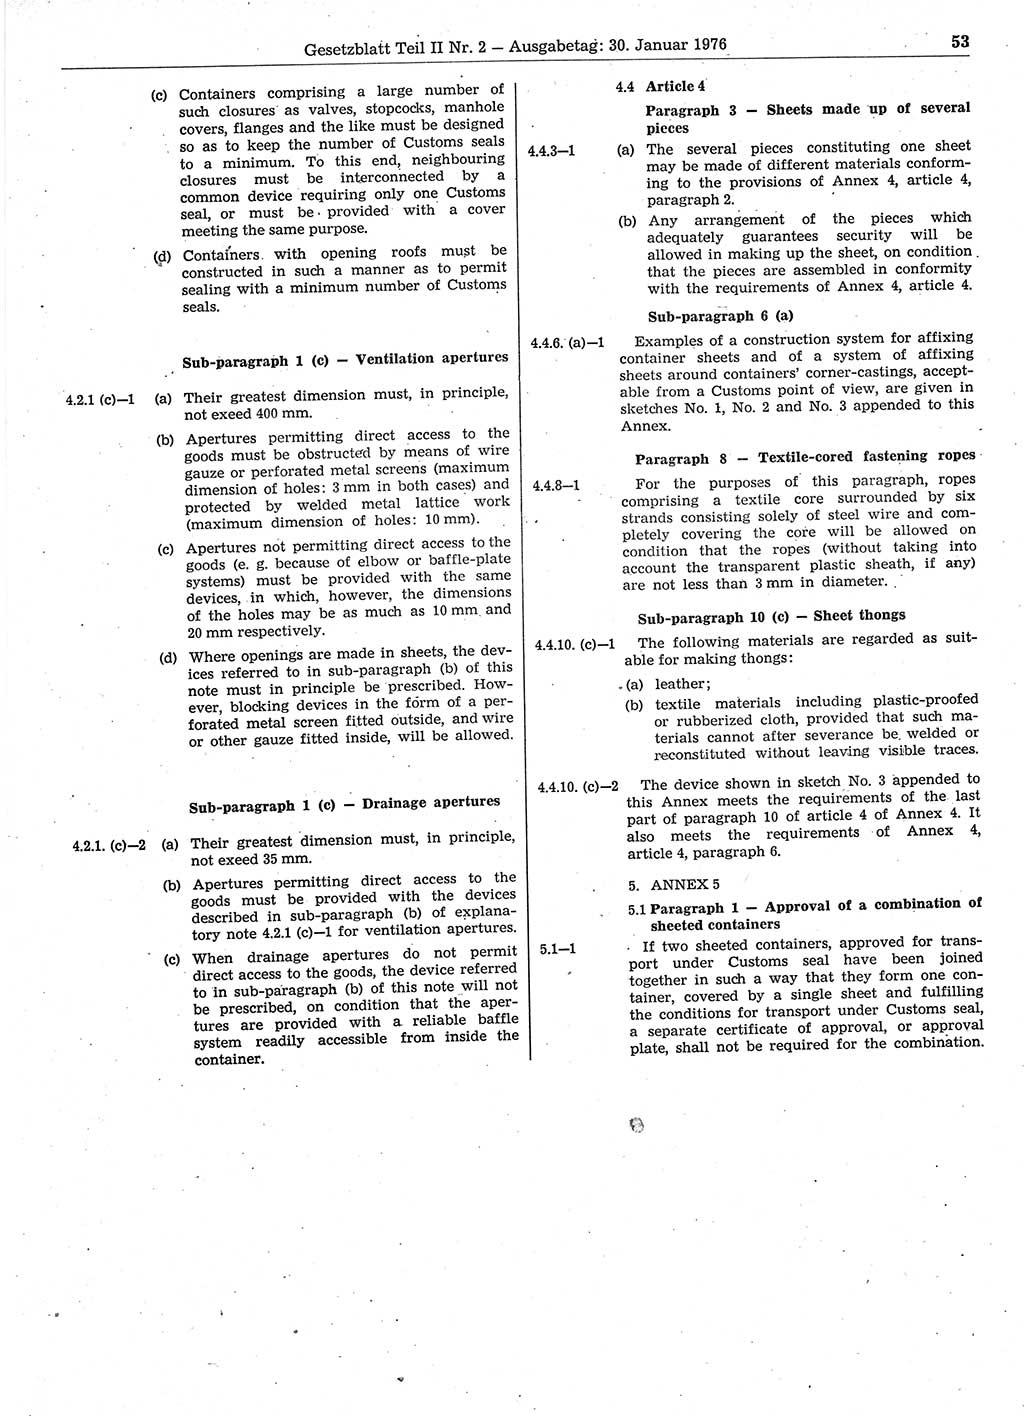 Gesetzblatt (GBl.) der Deutschen Demokratischen Republik (DDR) Teil ⅠⅠ 1976, Seite 53 (GBl. DDR ⅠⅠ 1976, S. 53)